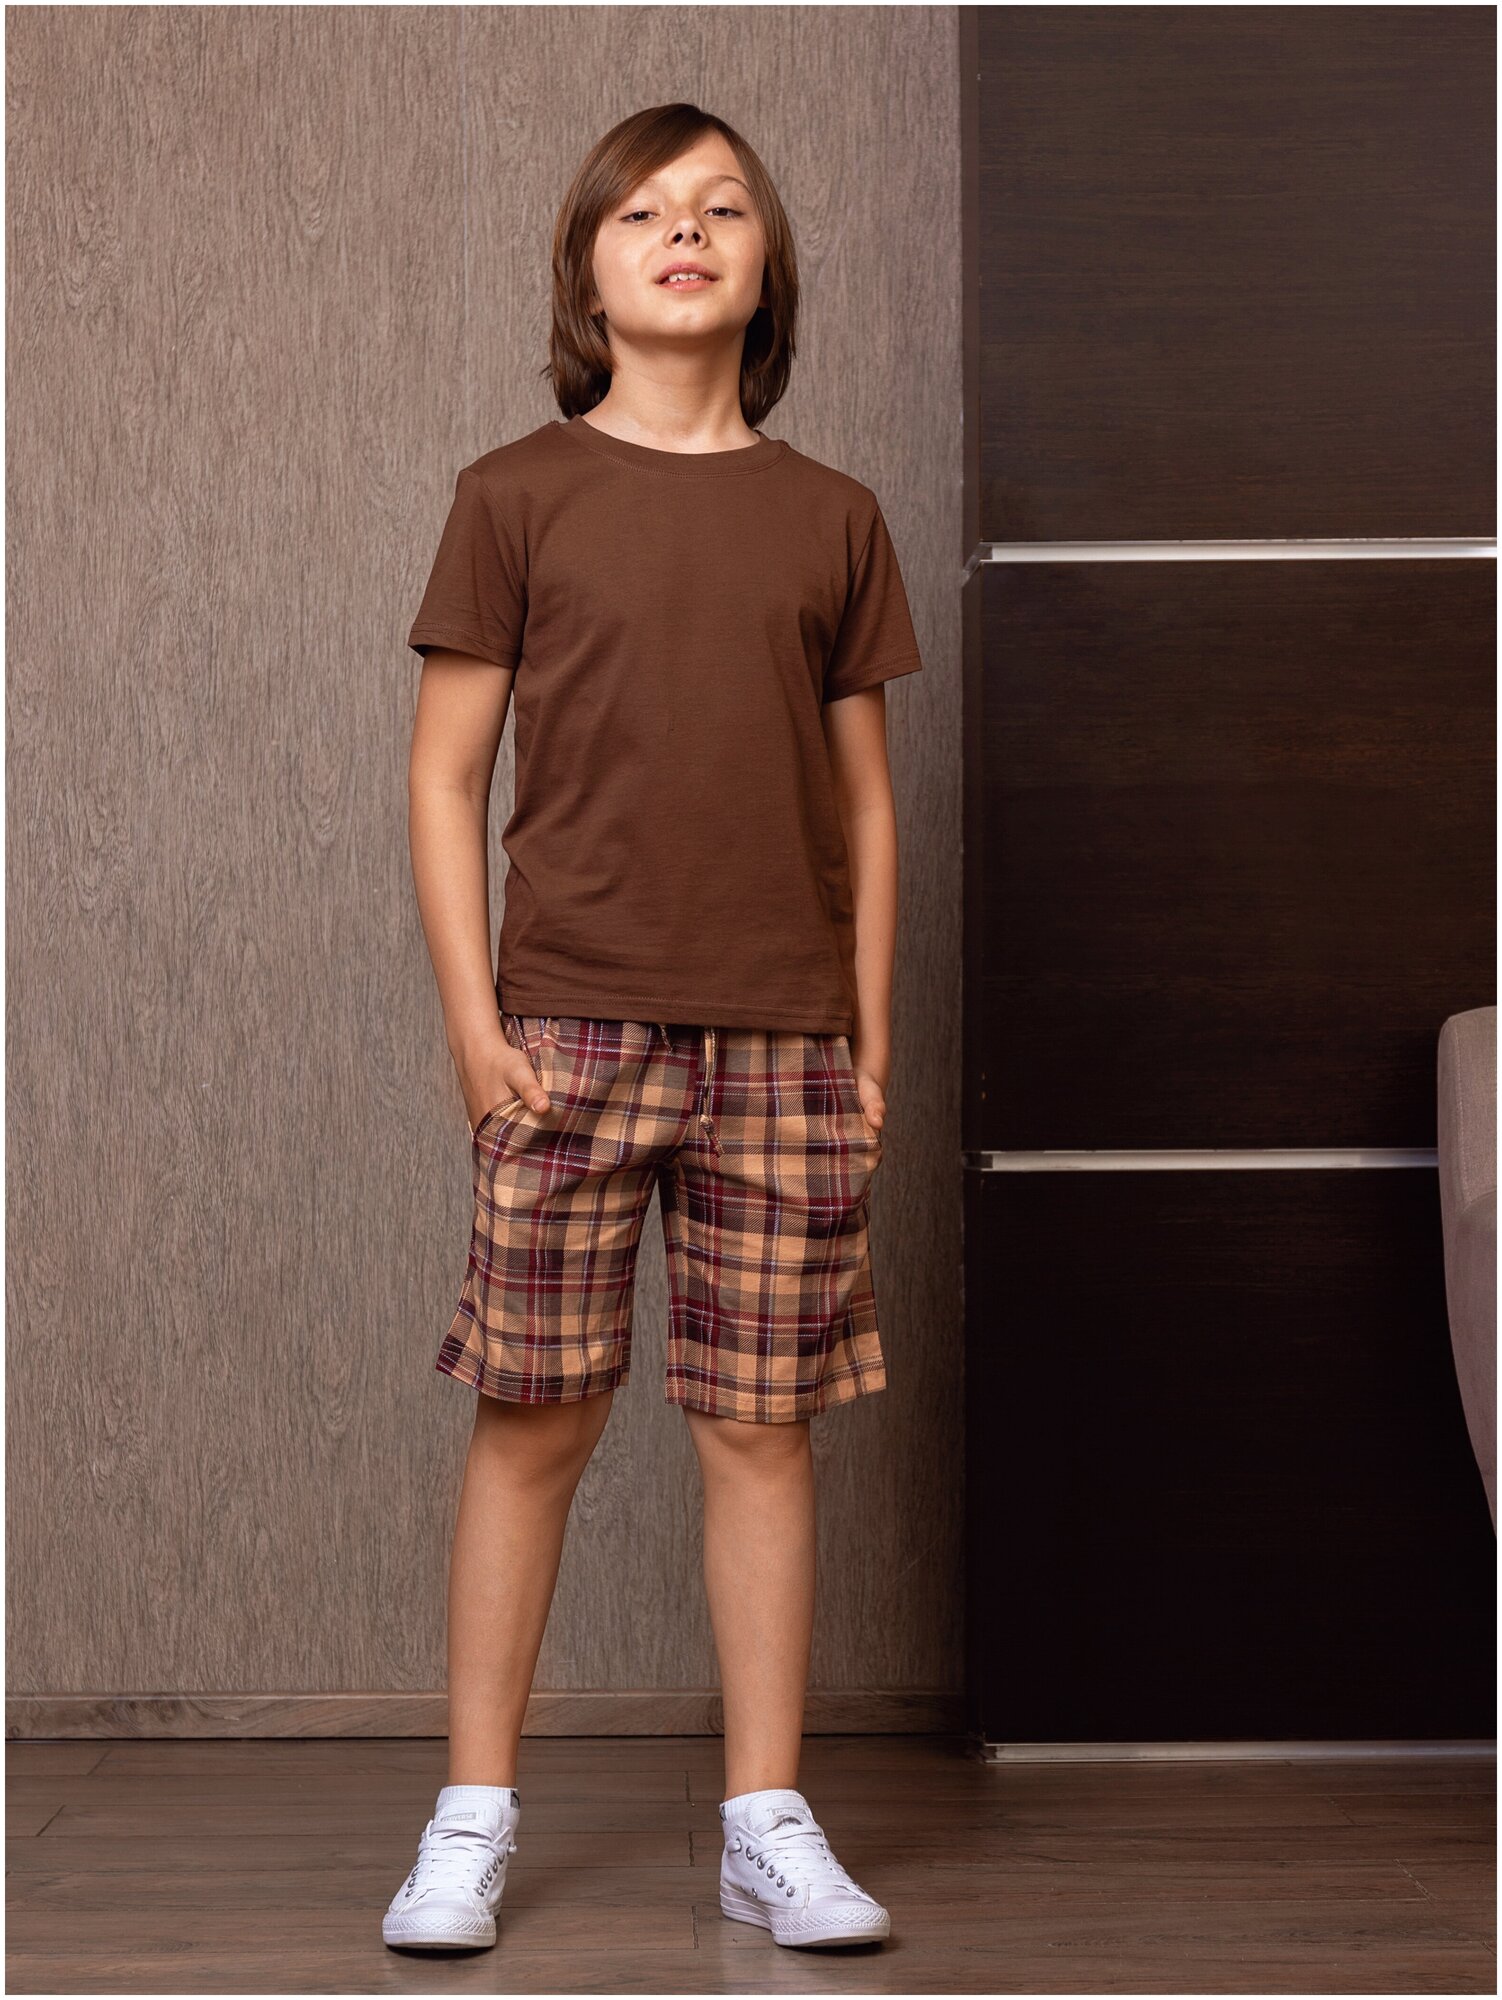 Пижама для мальчика шорты с футболкой MOR, MOR-05-009-001491-1211 — купить ...